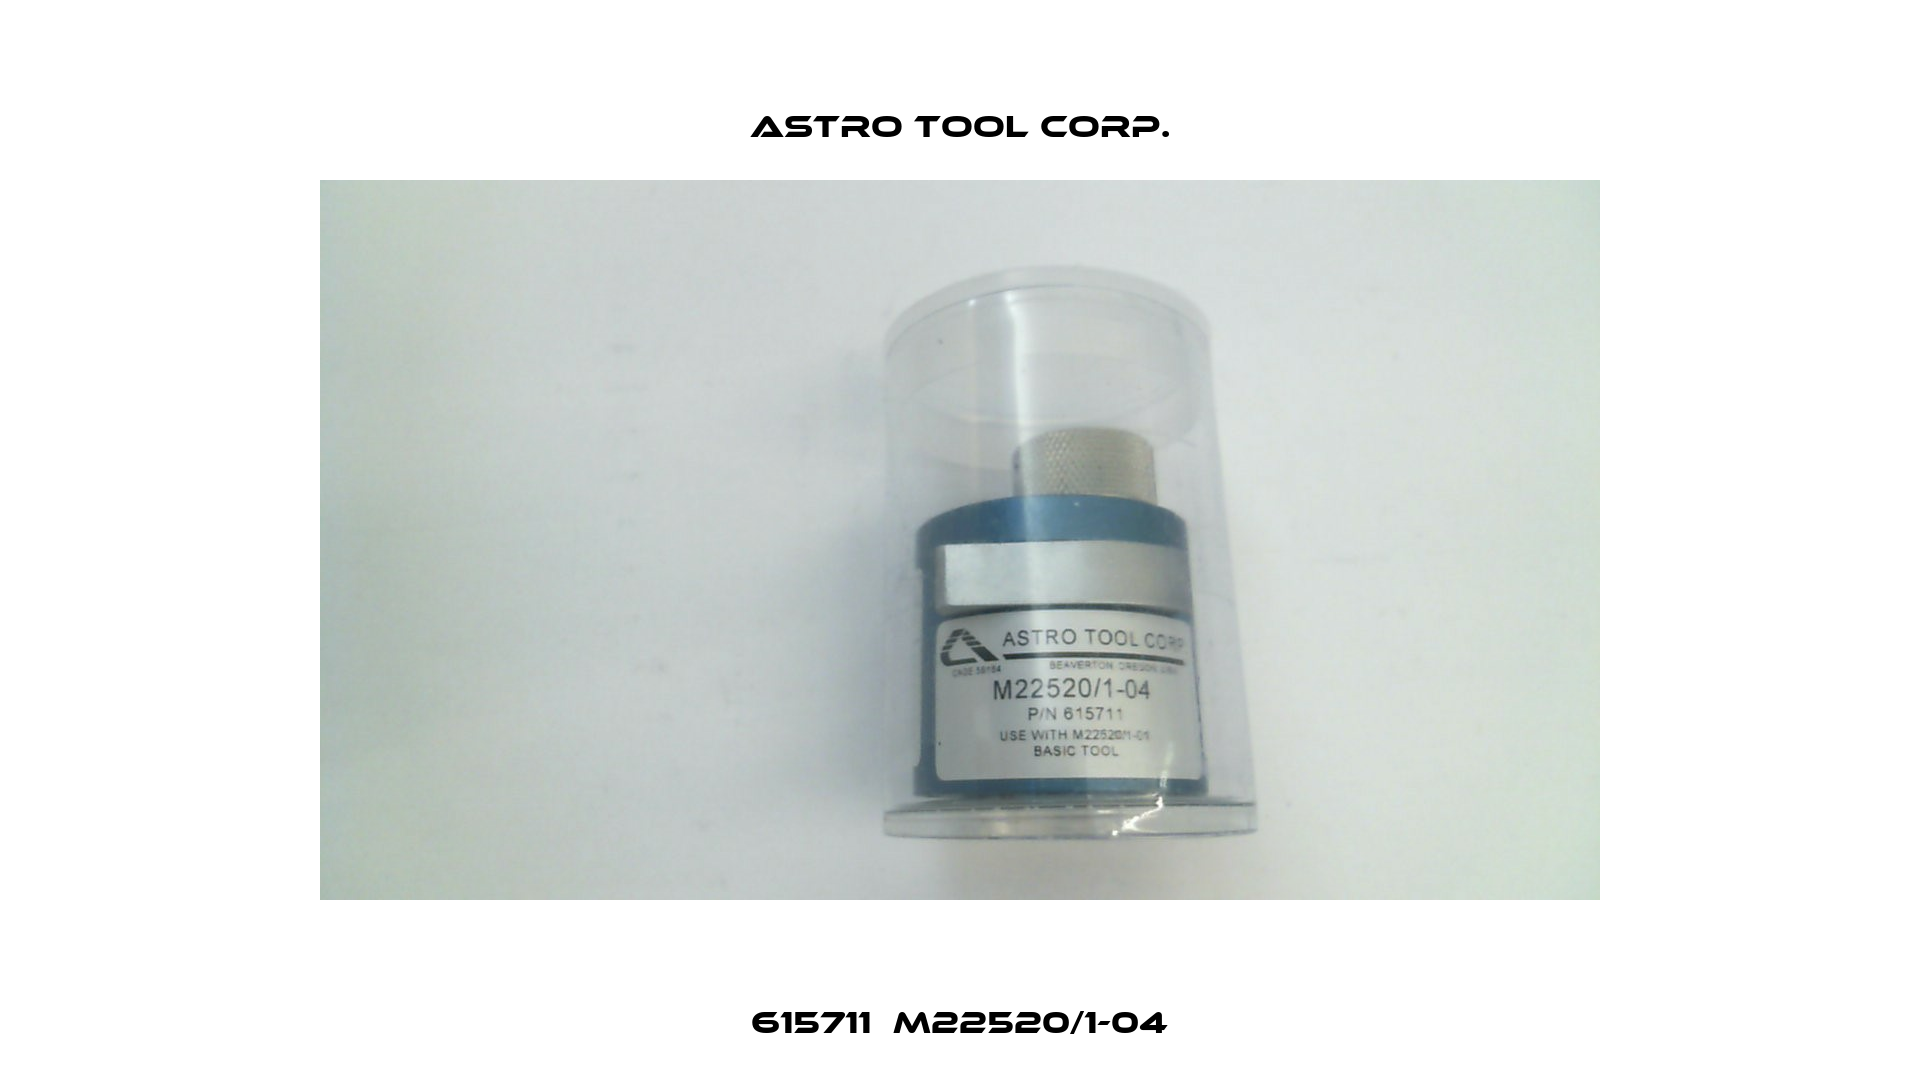 615711  M22520/1-04 Astro Tool Corp.